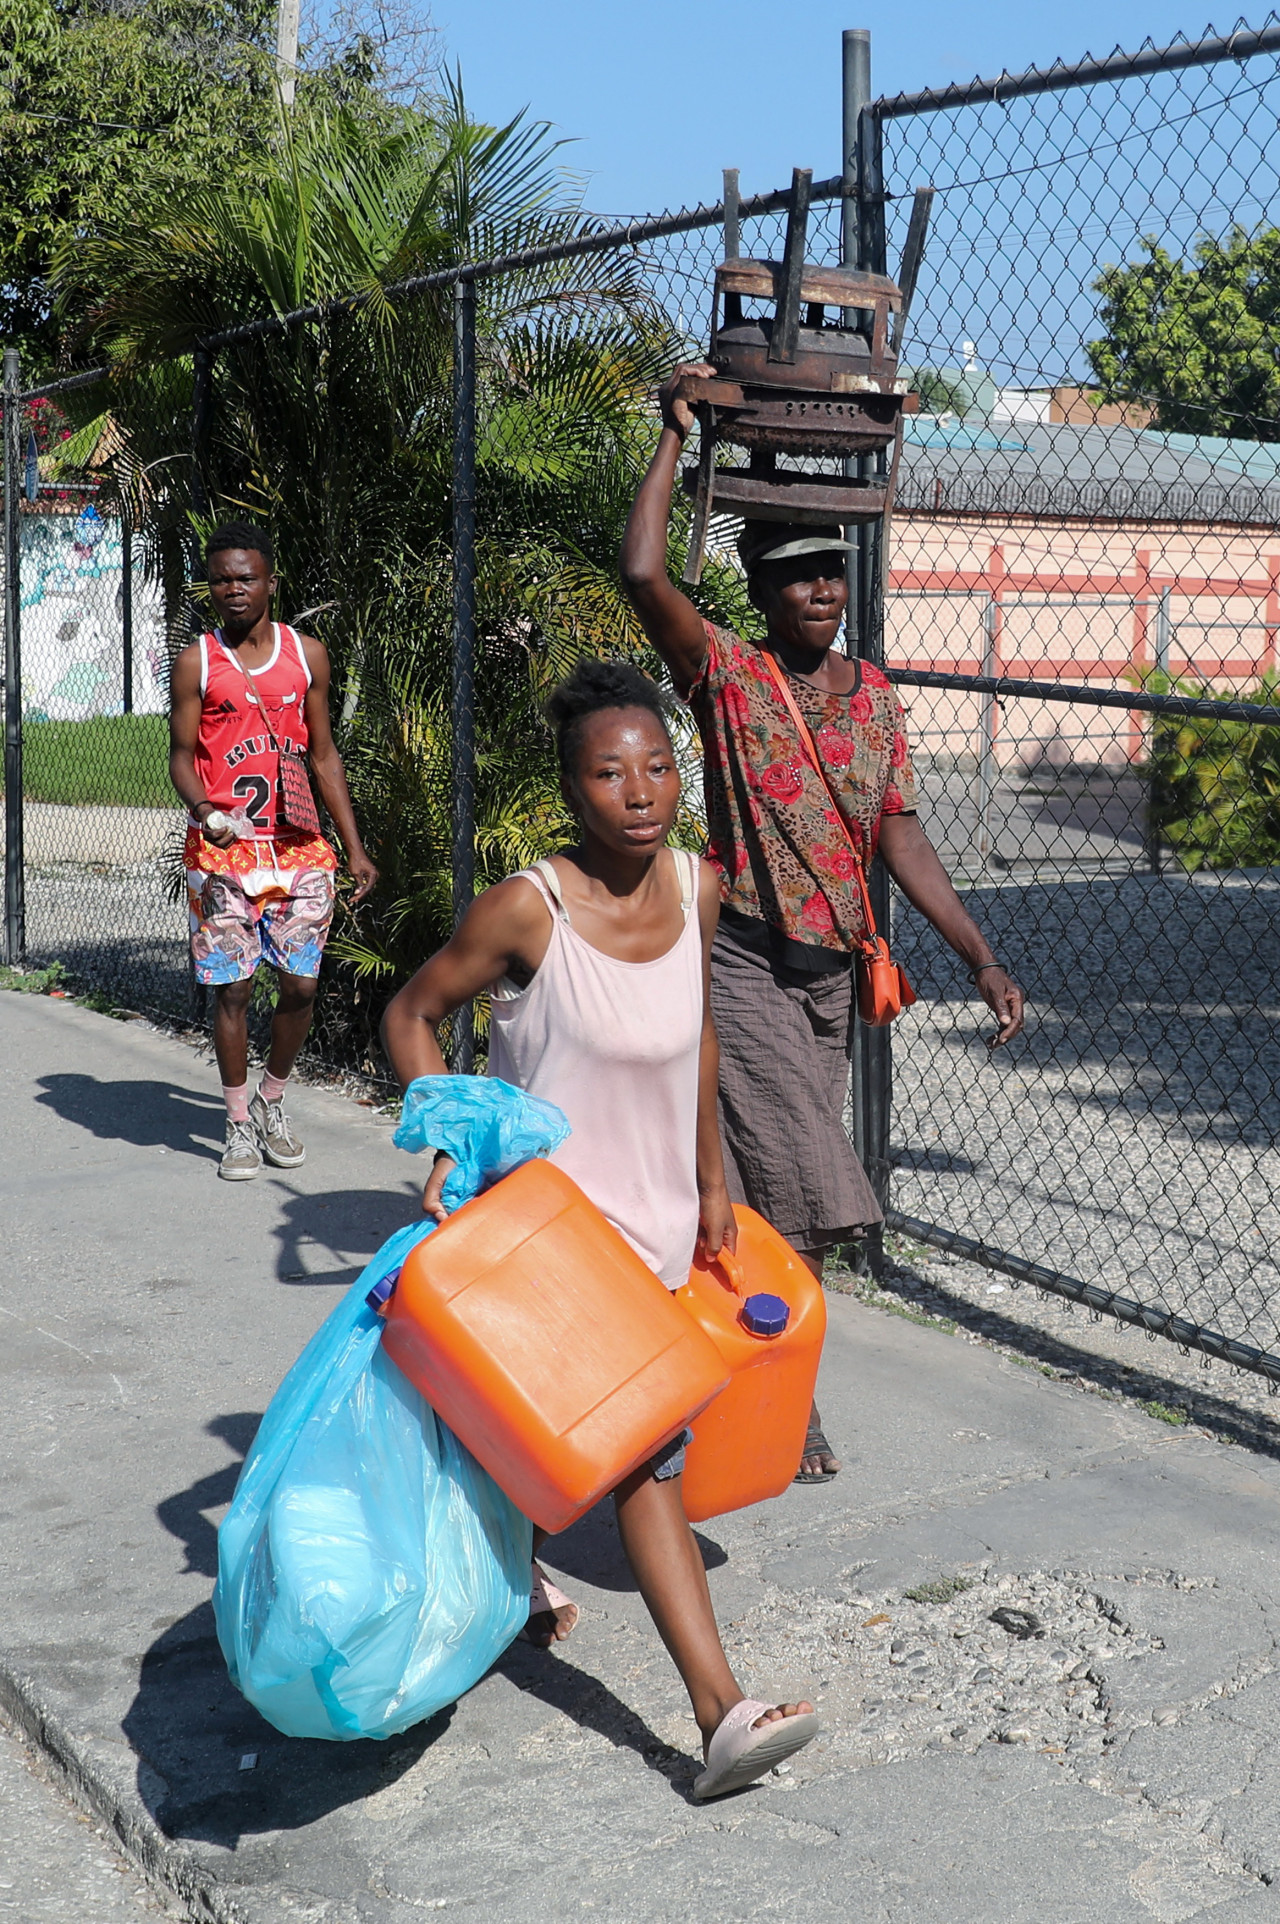 Estado de emergencia en Haití. Foto: Reuters